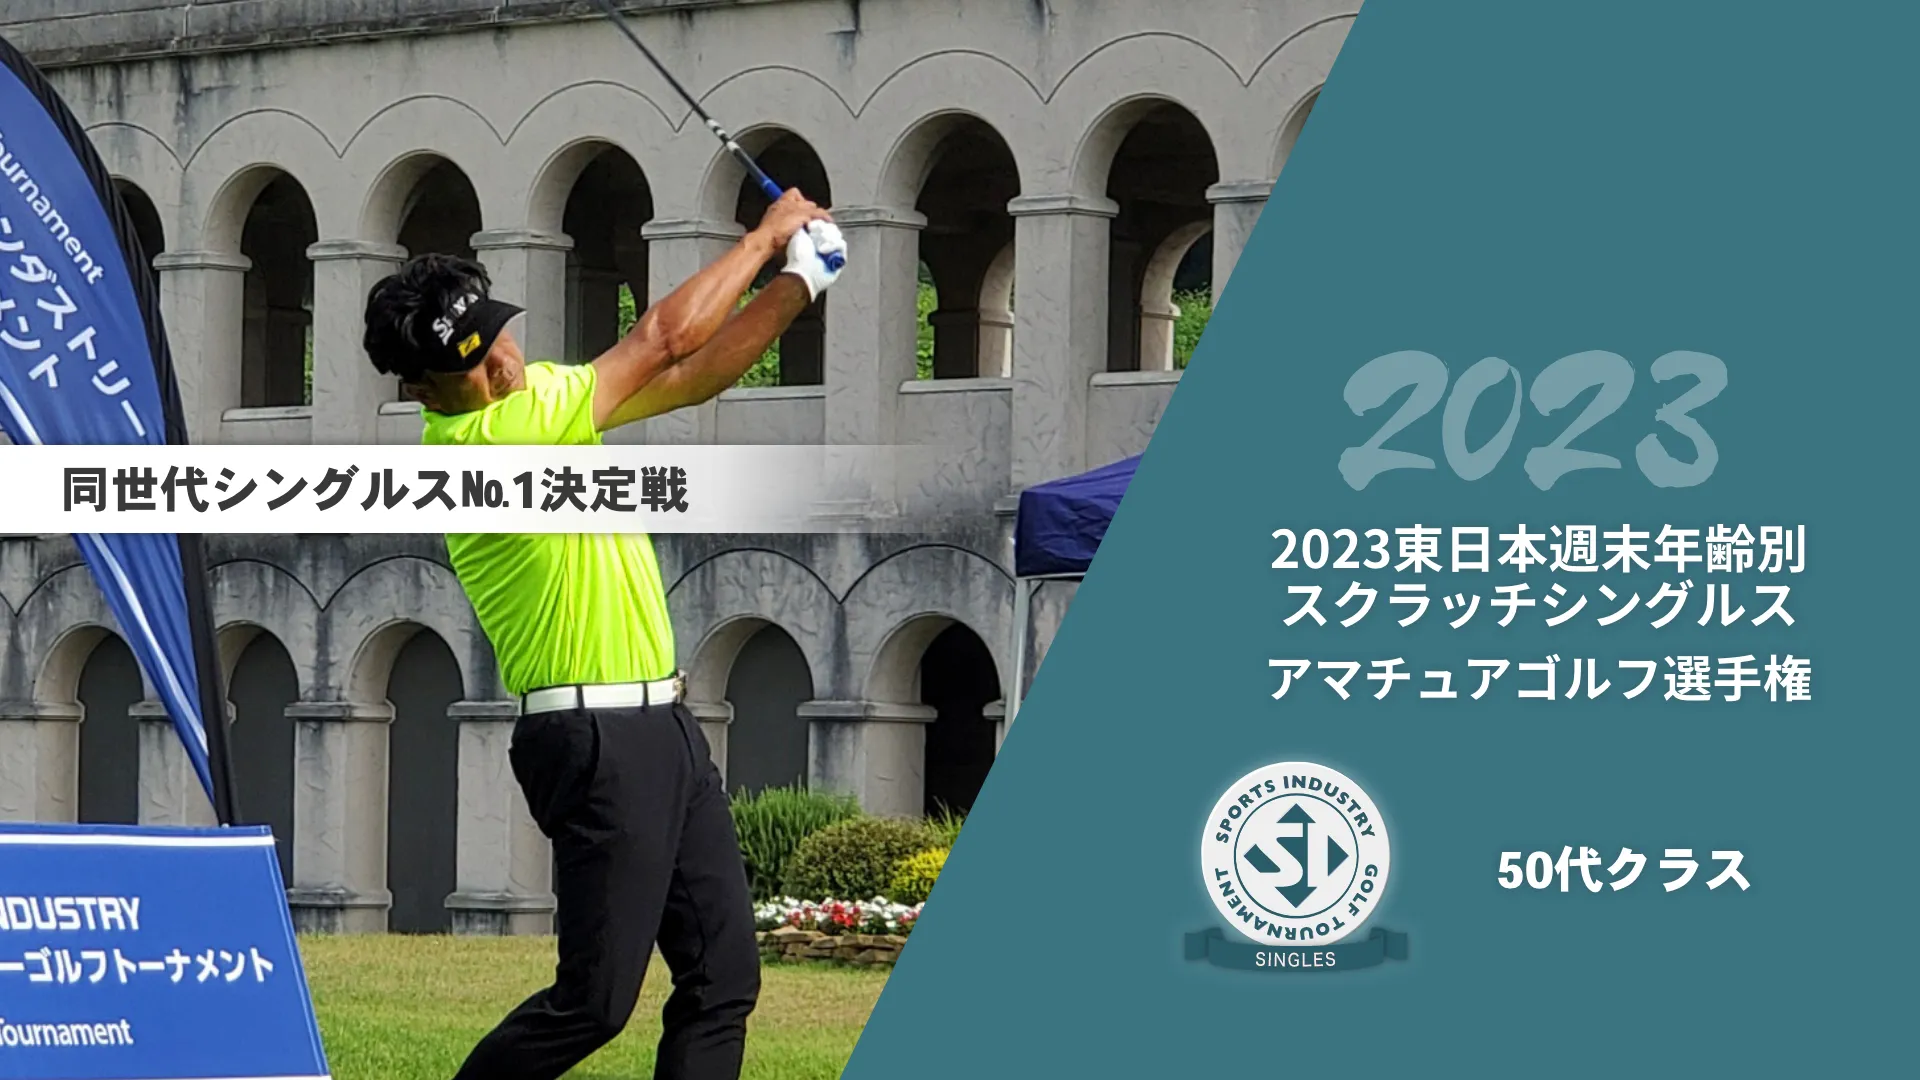 2023東日本週末年齢別スクラッチシングルスアマチュアゴルフ選手権_20代～40代クラス